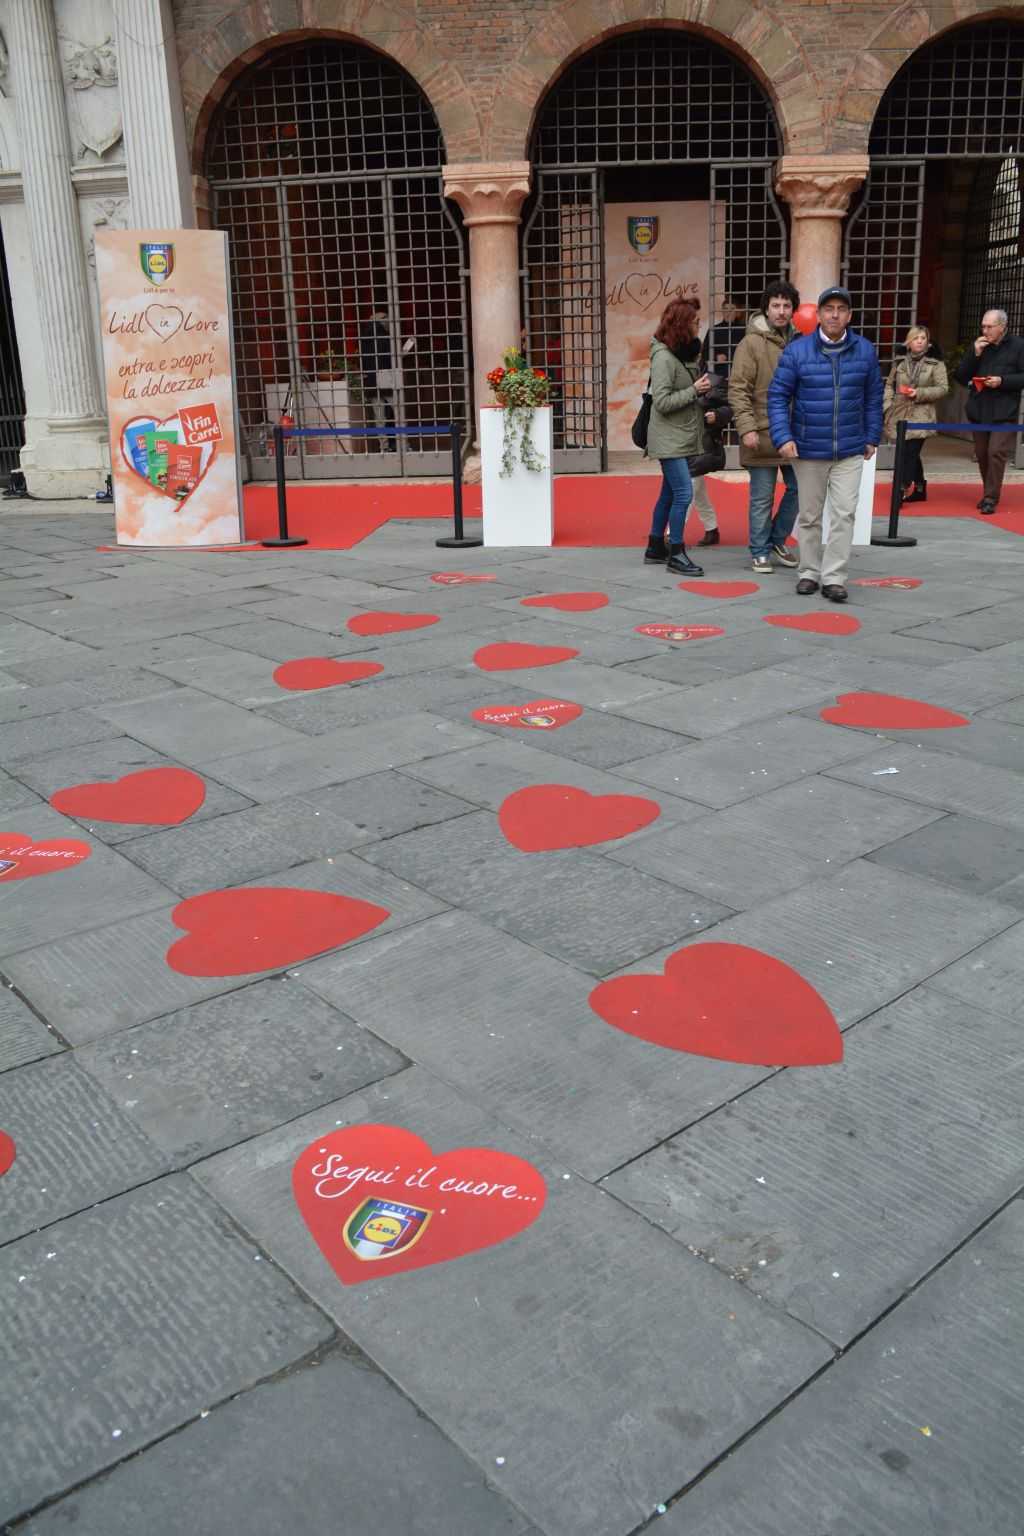 Piazza dei Signori meydanındaki yere yapıştırılmış kalpler sizi aşka dair ne varsa oraya doğru götürüyor :)